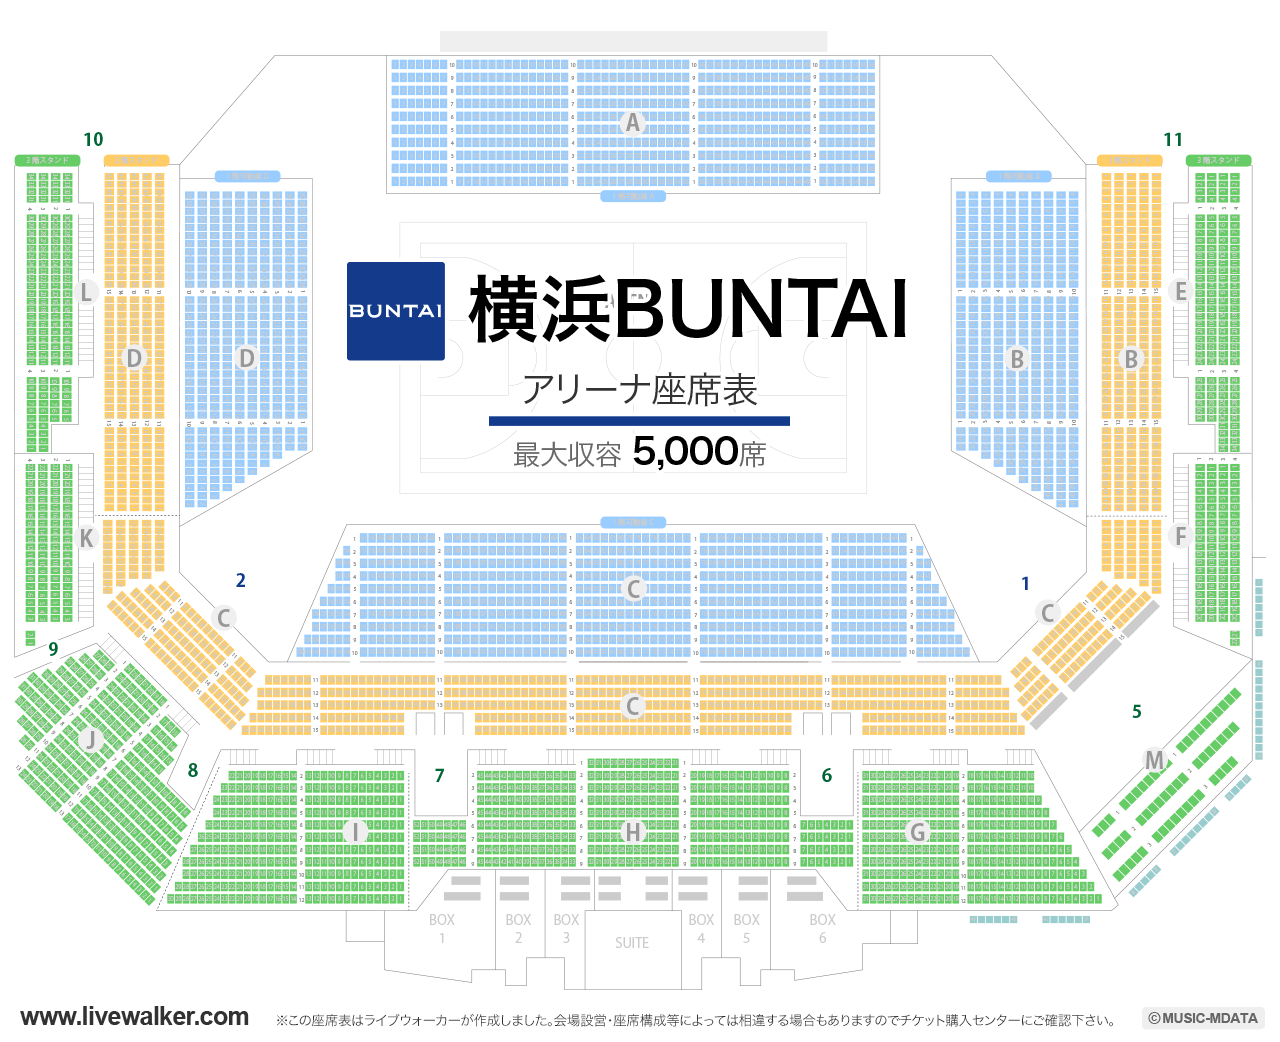 横浜BUNTAIの座席表